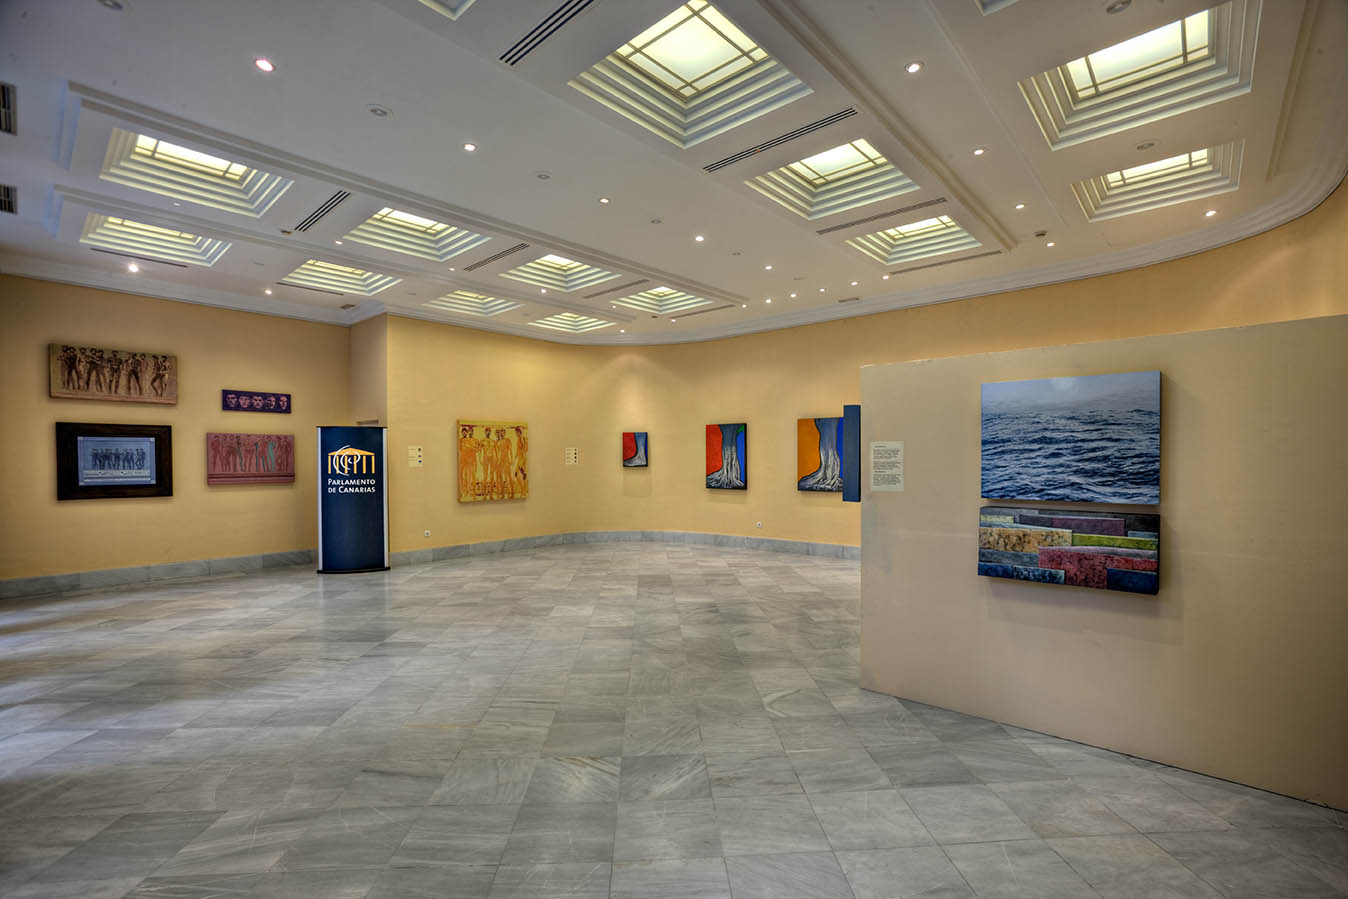 Inauguración de la exposición "Miradas 2", organizada por el Círculo de Bellas Artes de Tenerife (6/oct/2022 10:00)